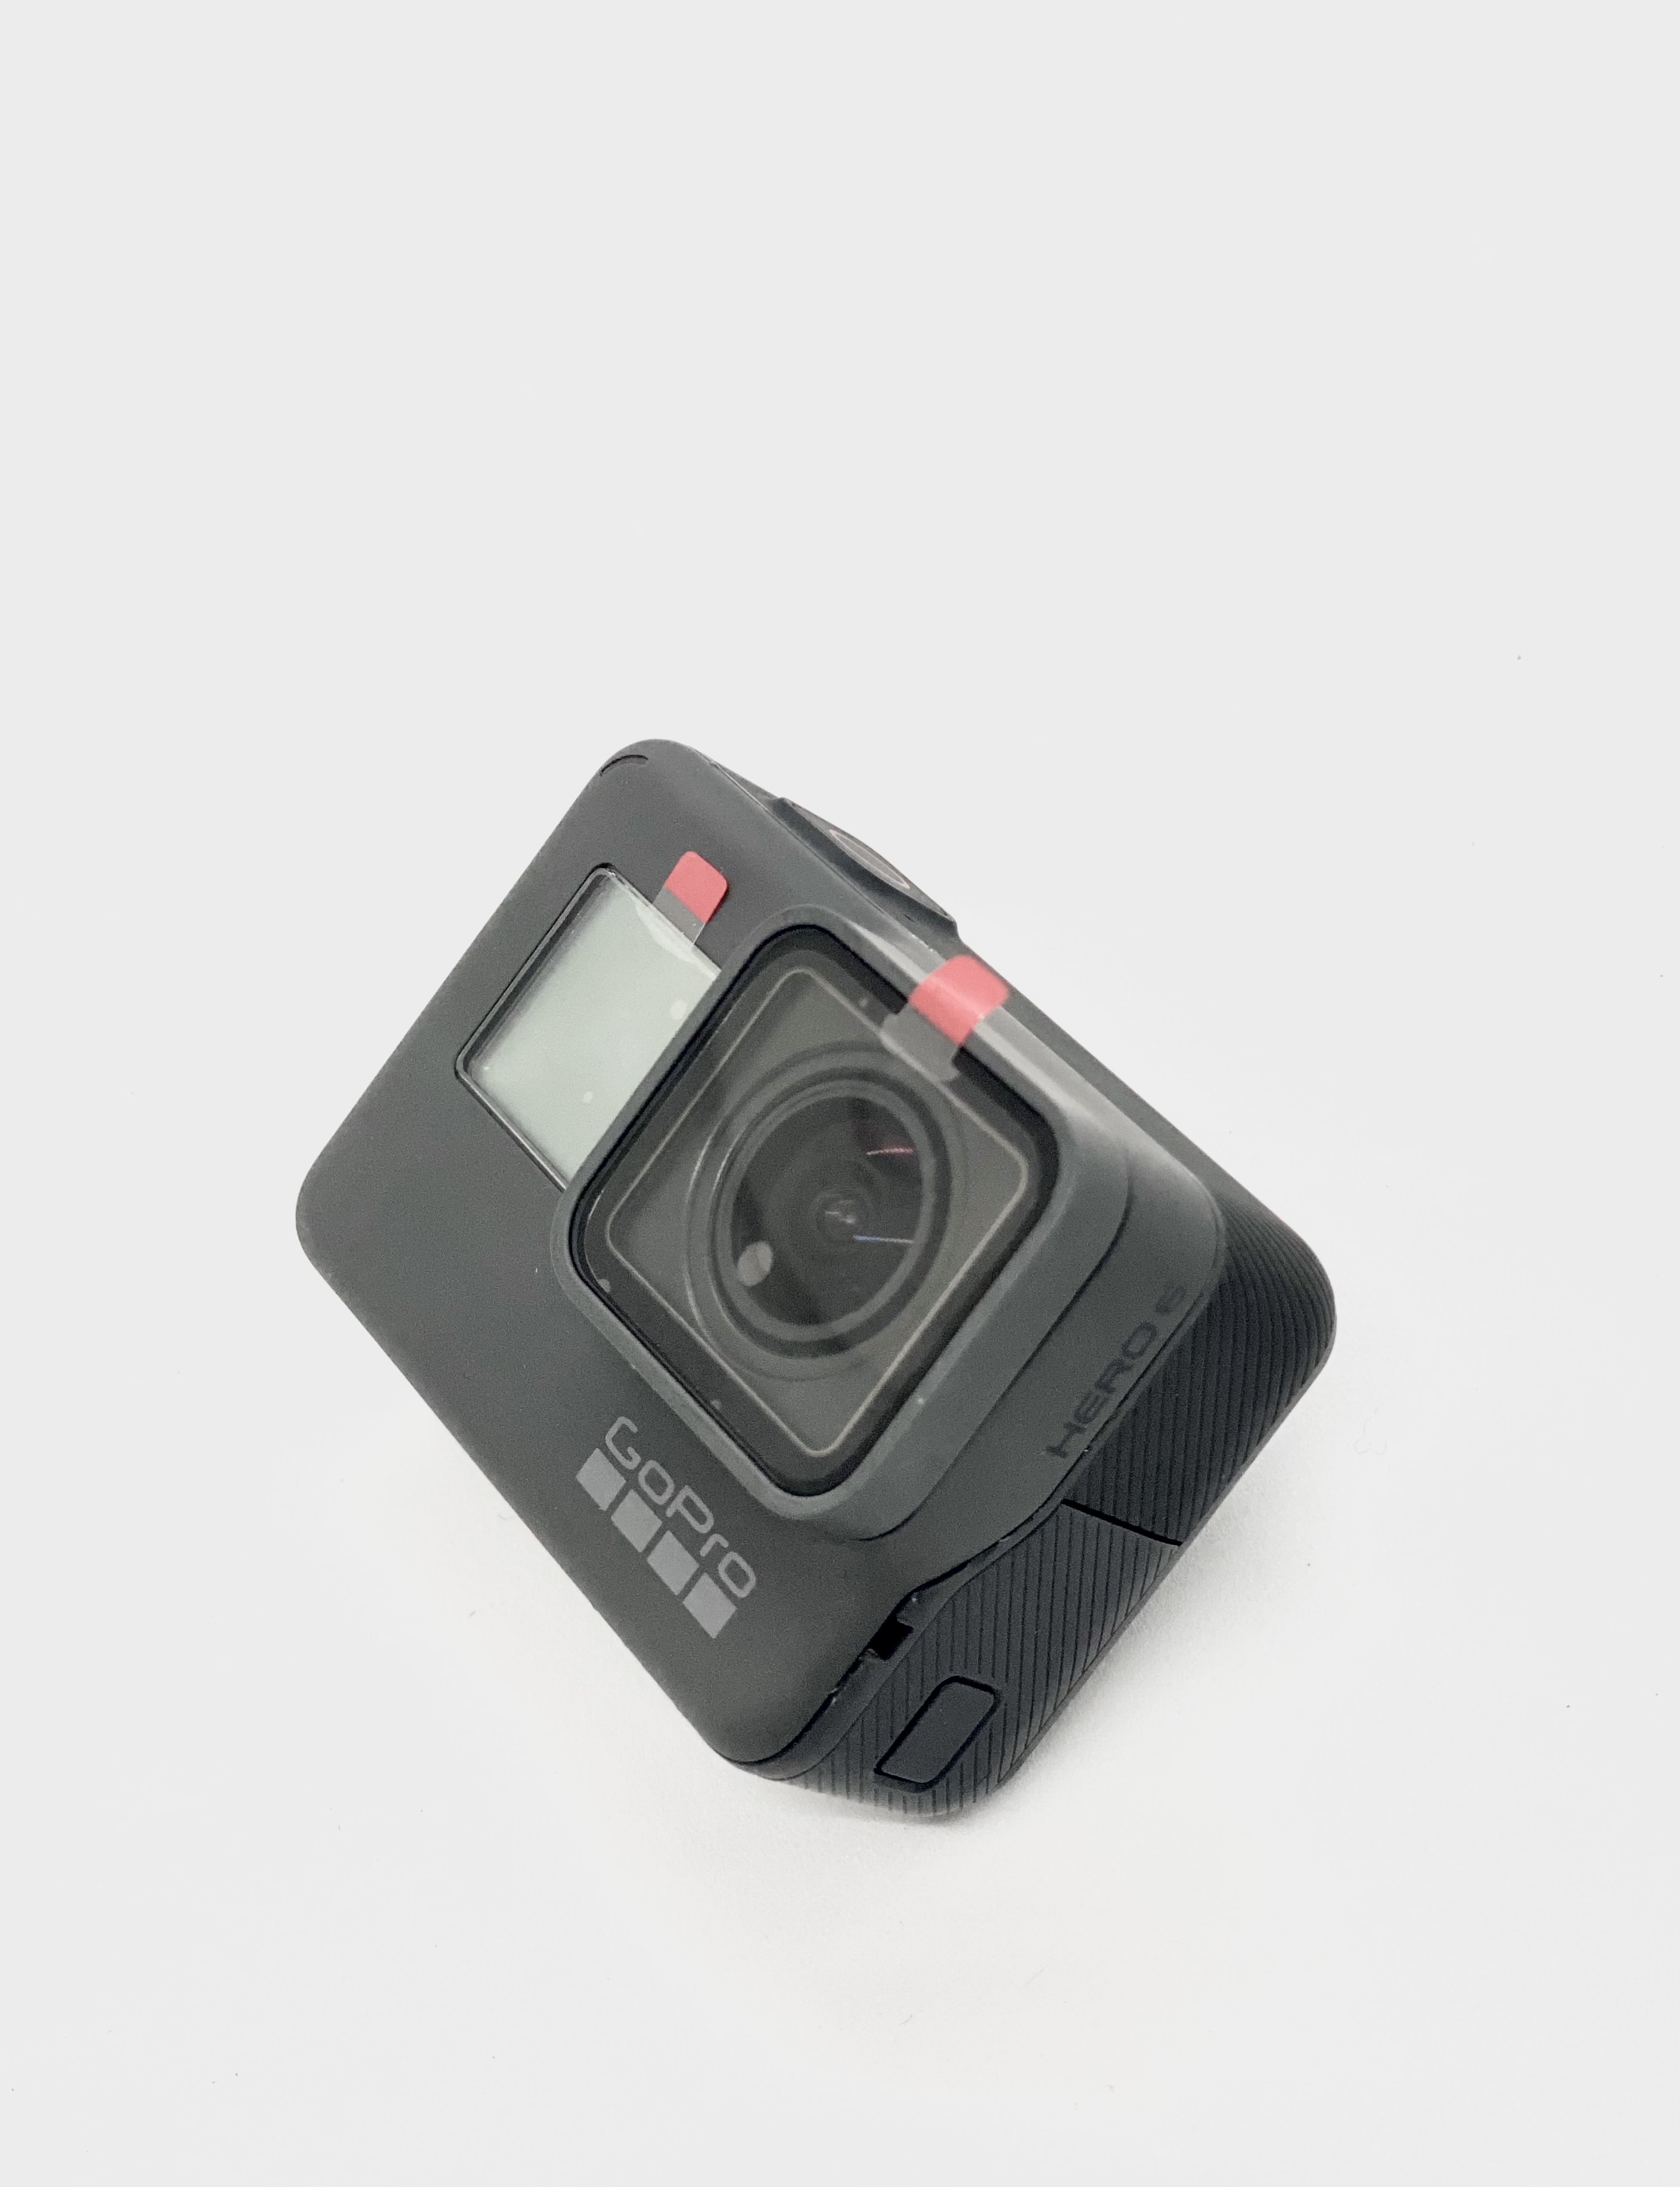 [Trả góp 0%]GoPro hero 5 black - Bảo hành 1 đổi 1 trong 12 tháng